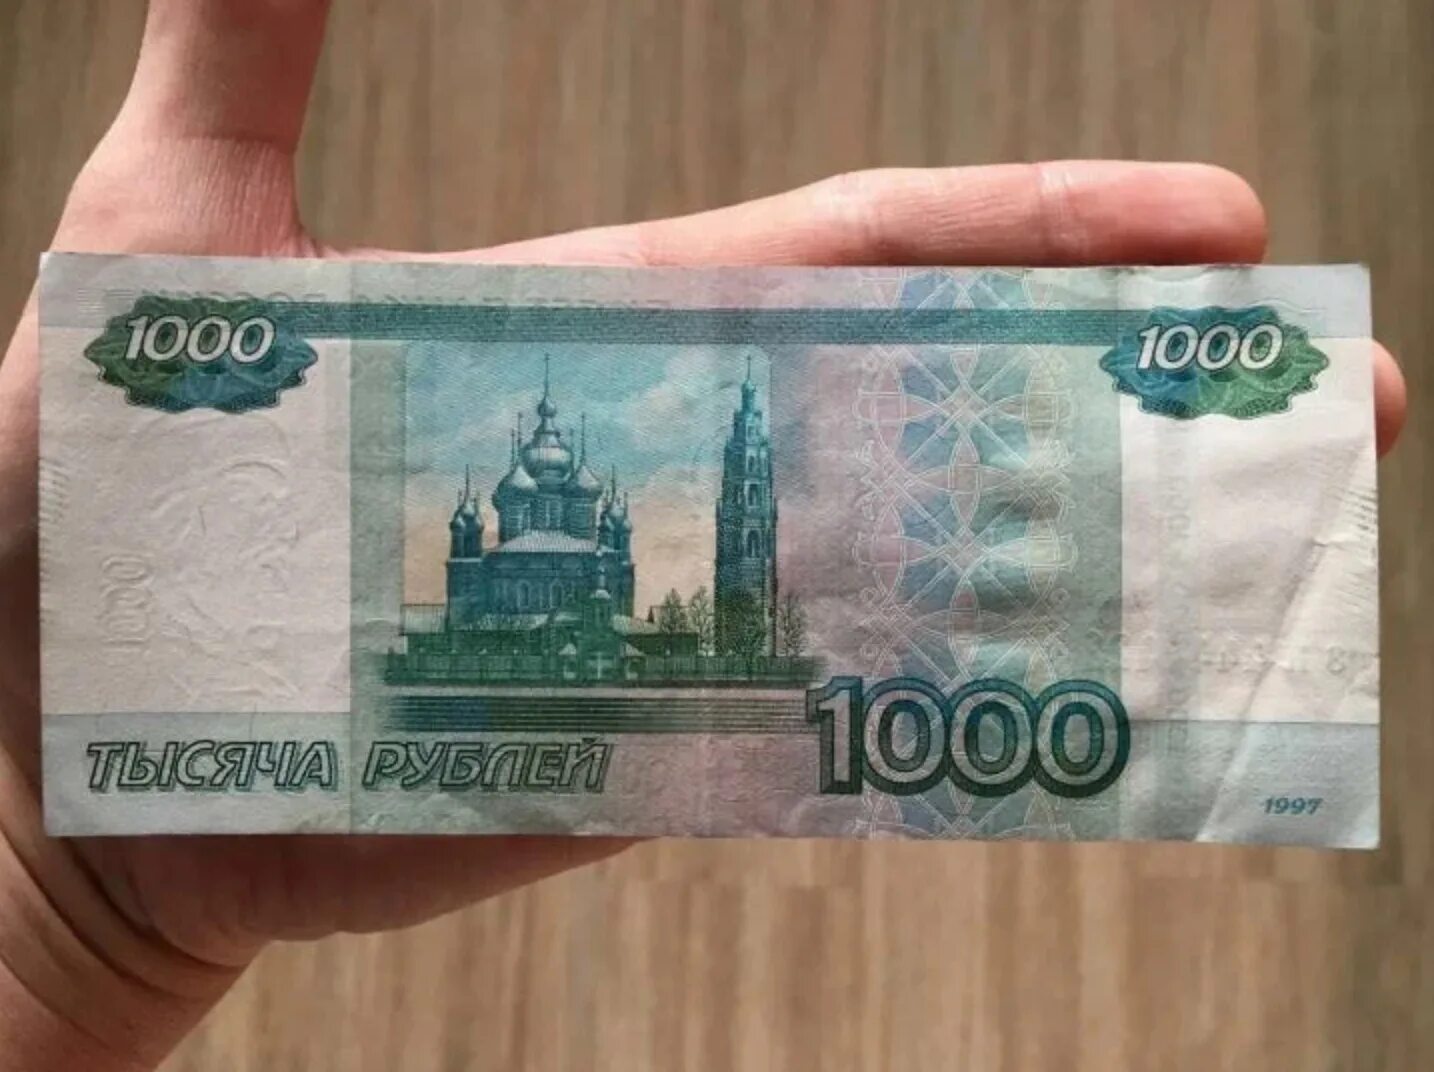 1000 Рублей. Купюра 1000 рублей. Банкнота 1000 рублей. 1000 Тысяч рублей.